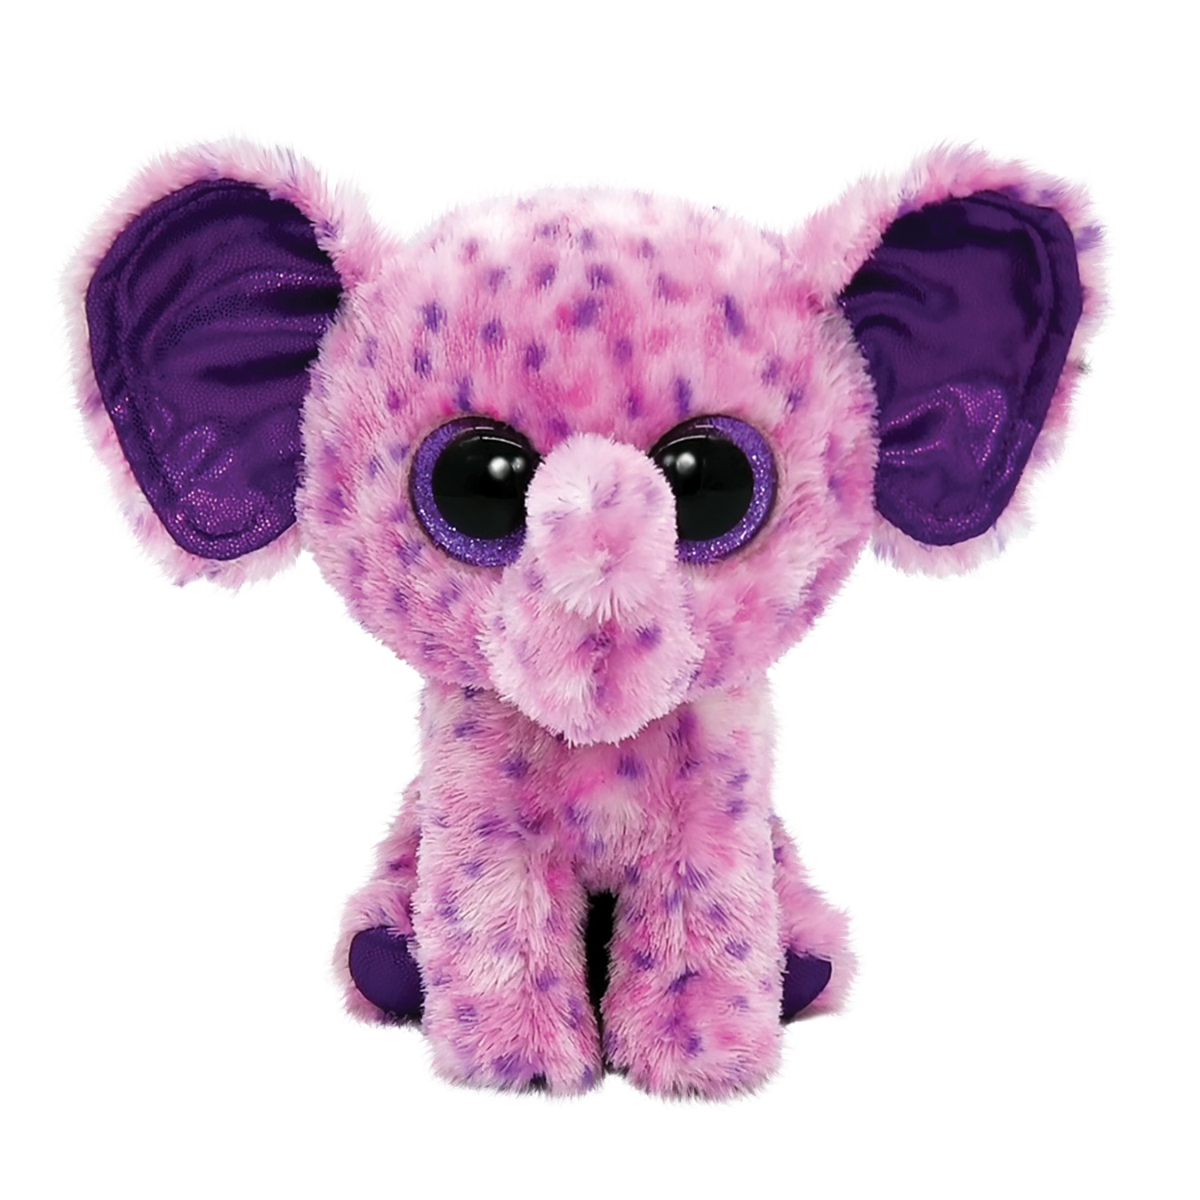 Ty - peluche - beanie boos - elefante - eva - rosa e viola - occhi, orecchie e zampe color viola glitter - il pupazzo con gli occhi grandi scintillanti - 15 cm - 36386 - TY